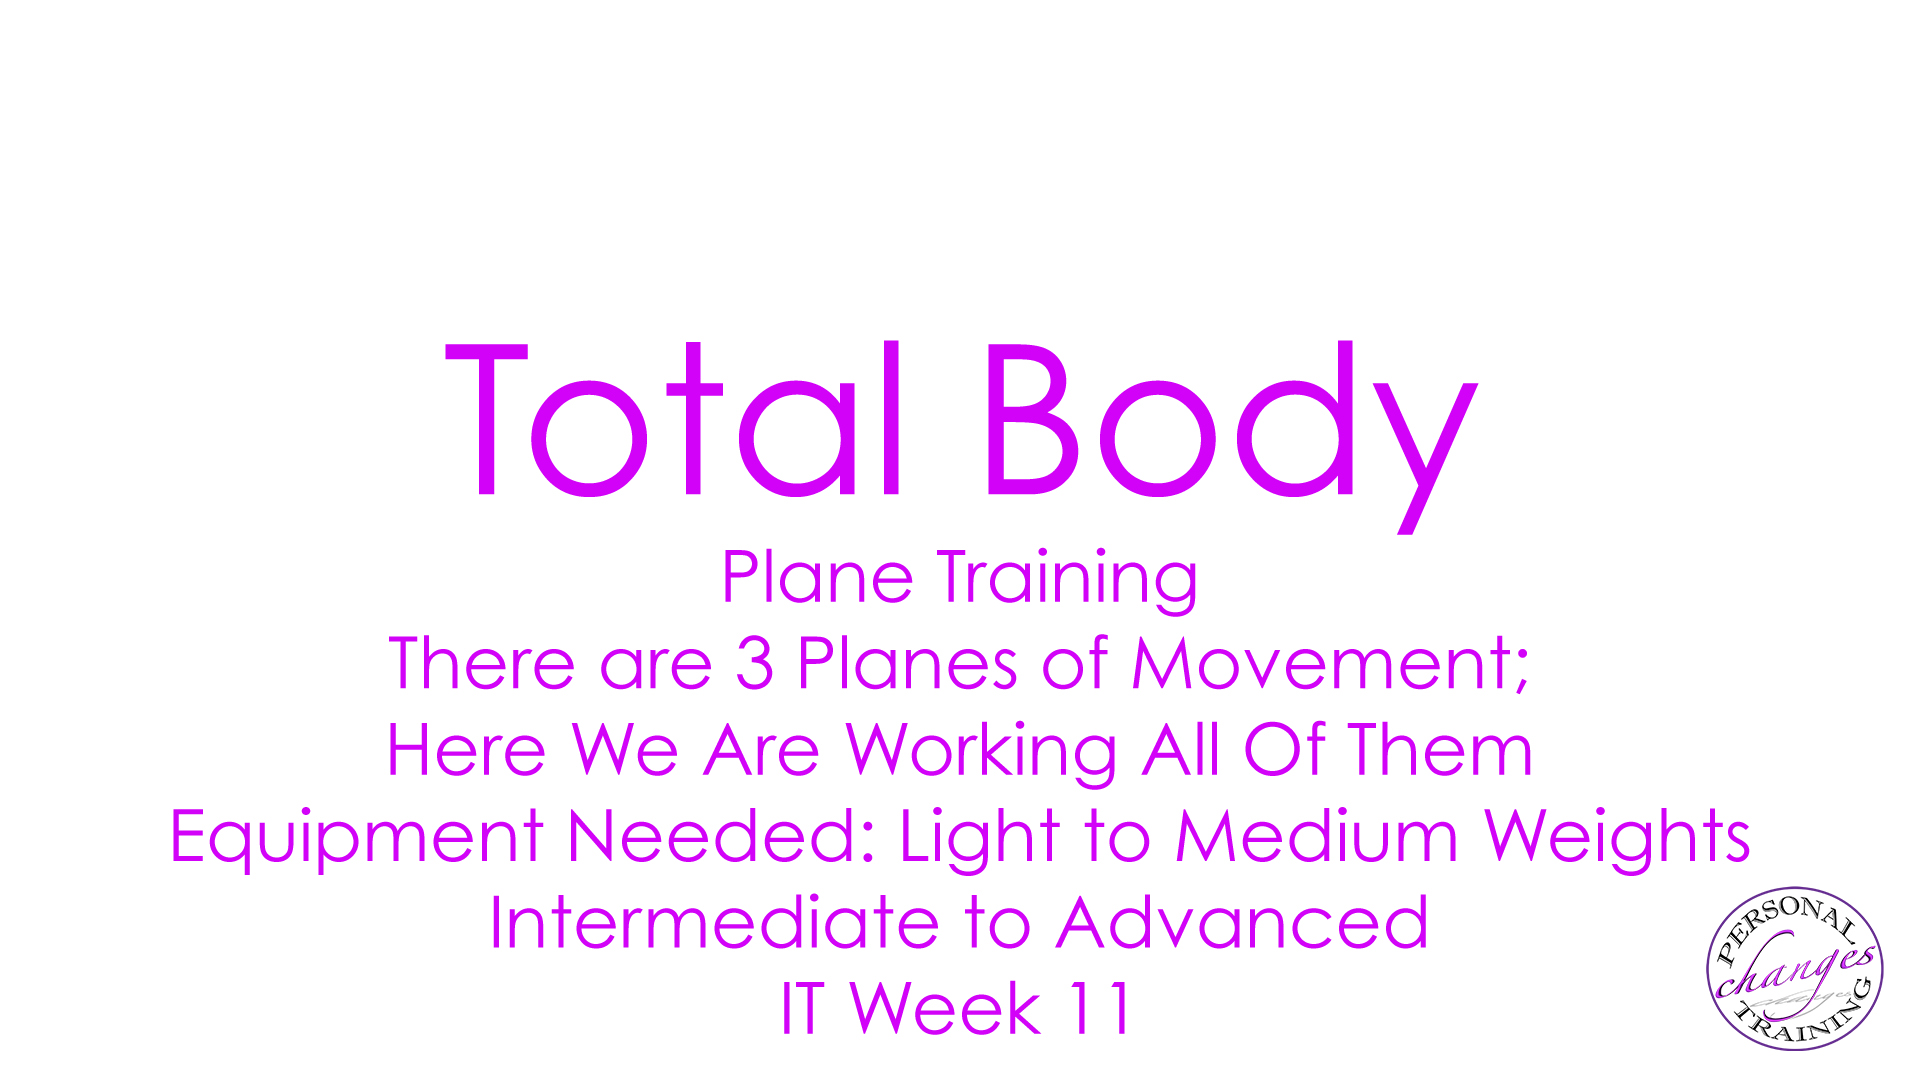 IT Week 11 Total Body